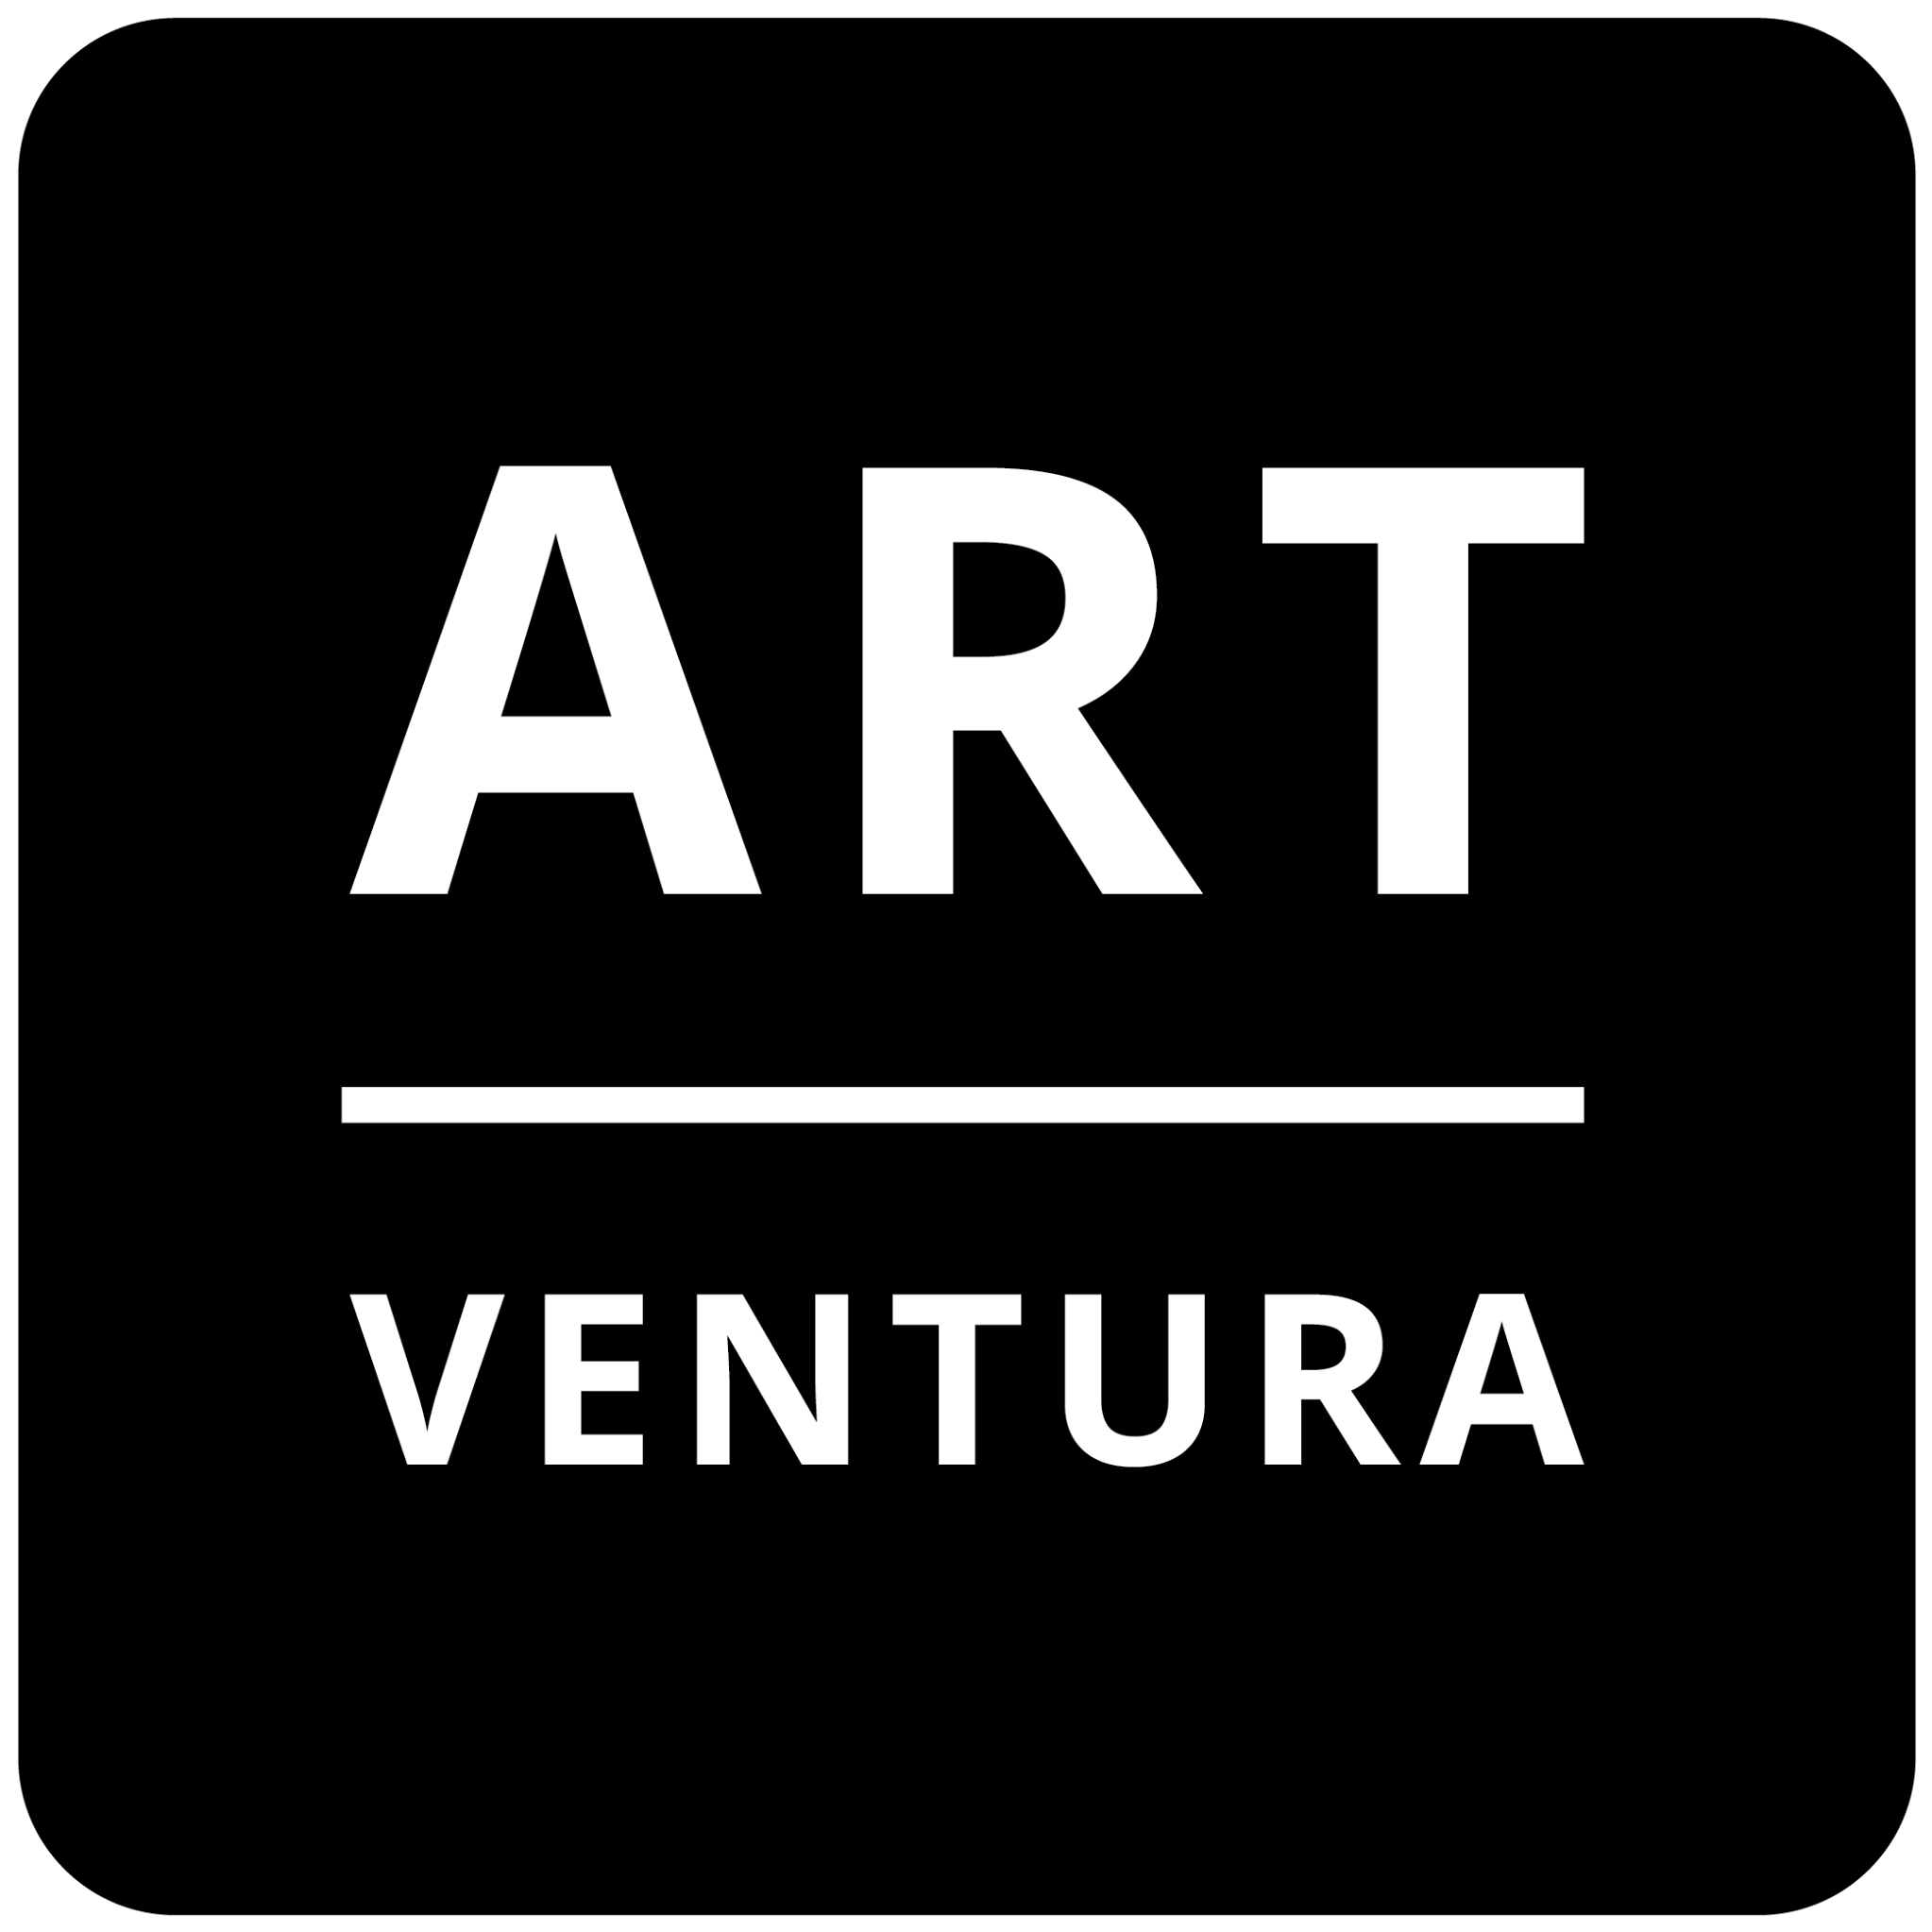 Art Ventura